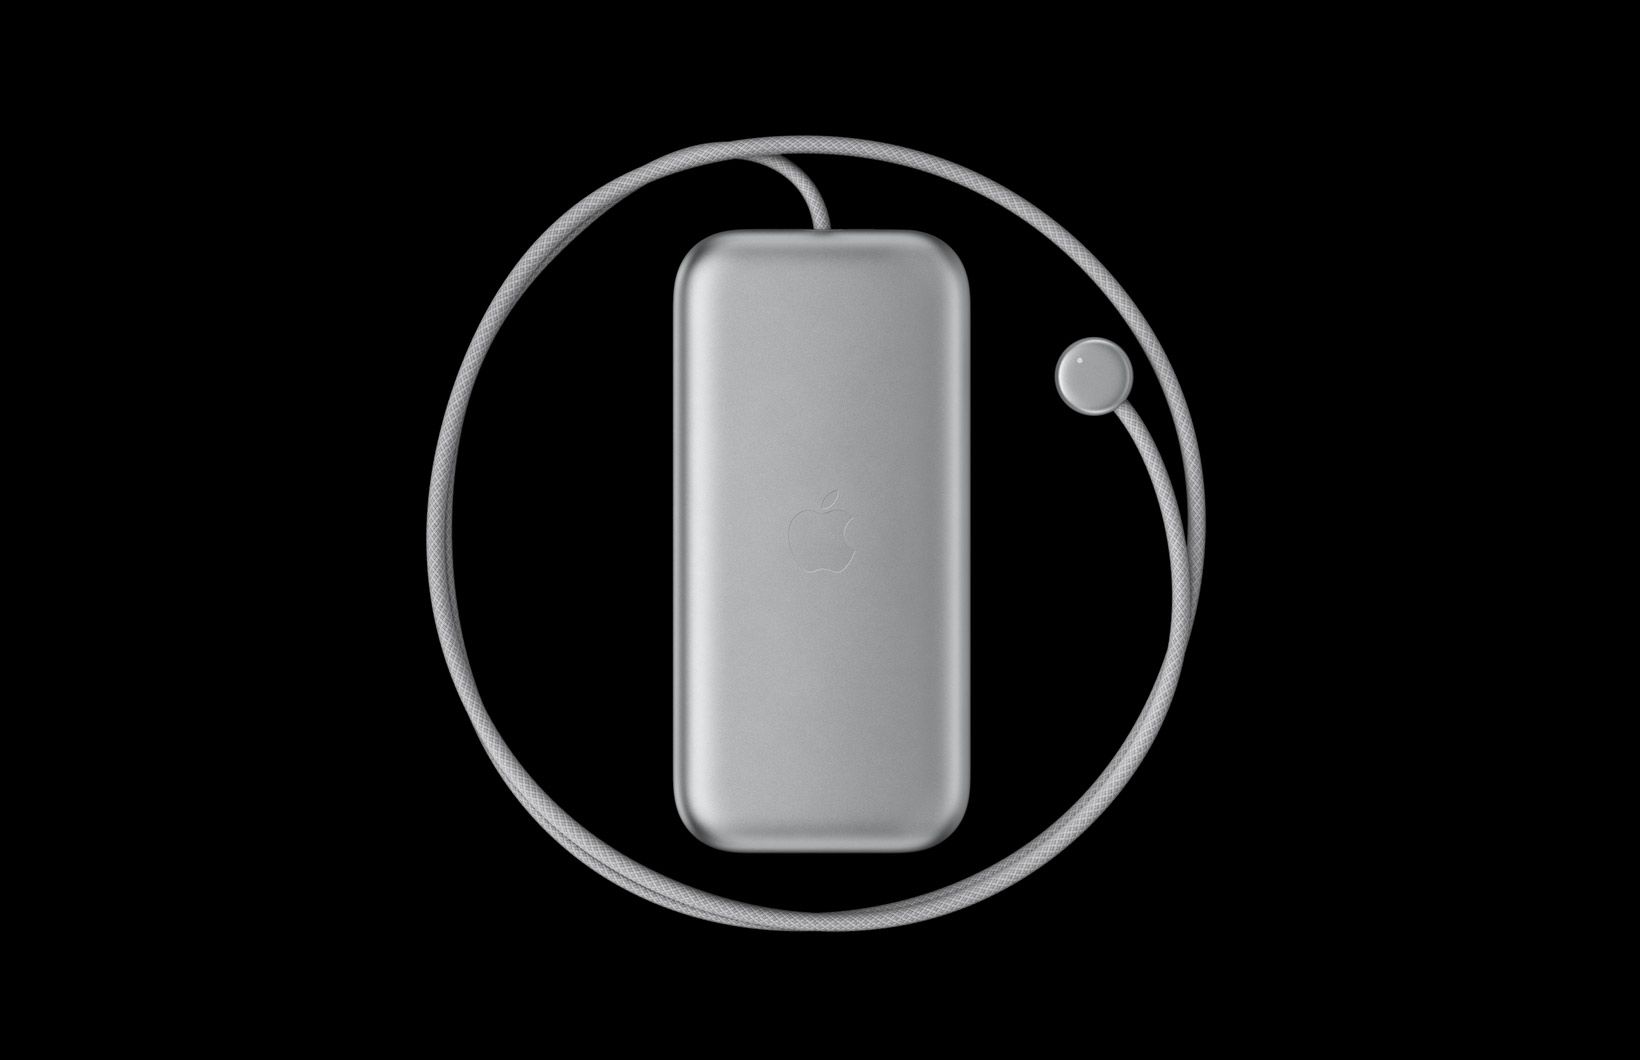 كابل الطاقة Apple Vision Pro Battery Pack قابل للإزالة